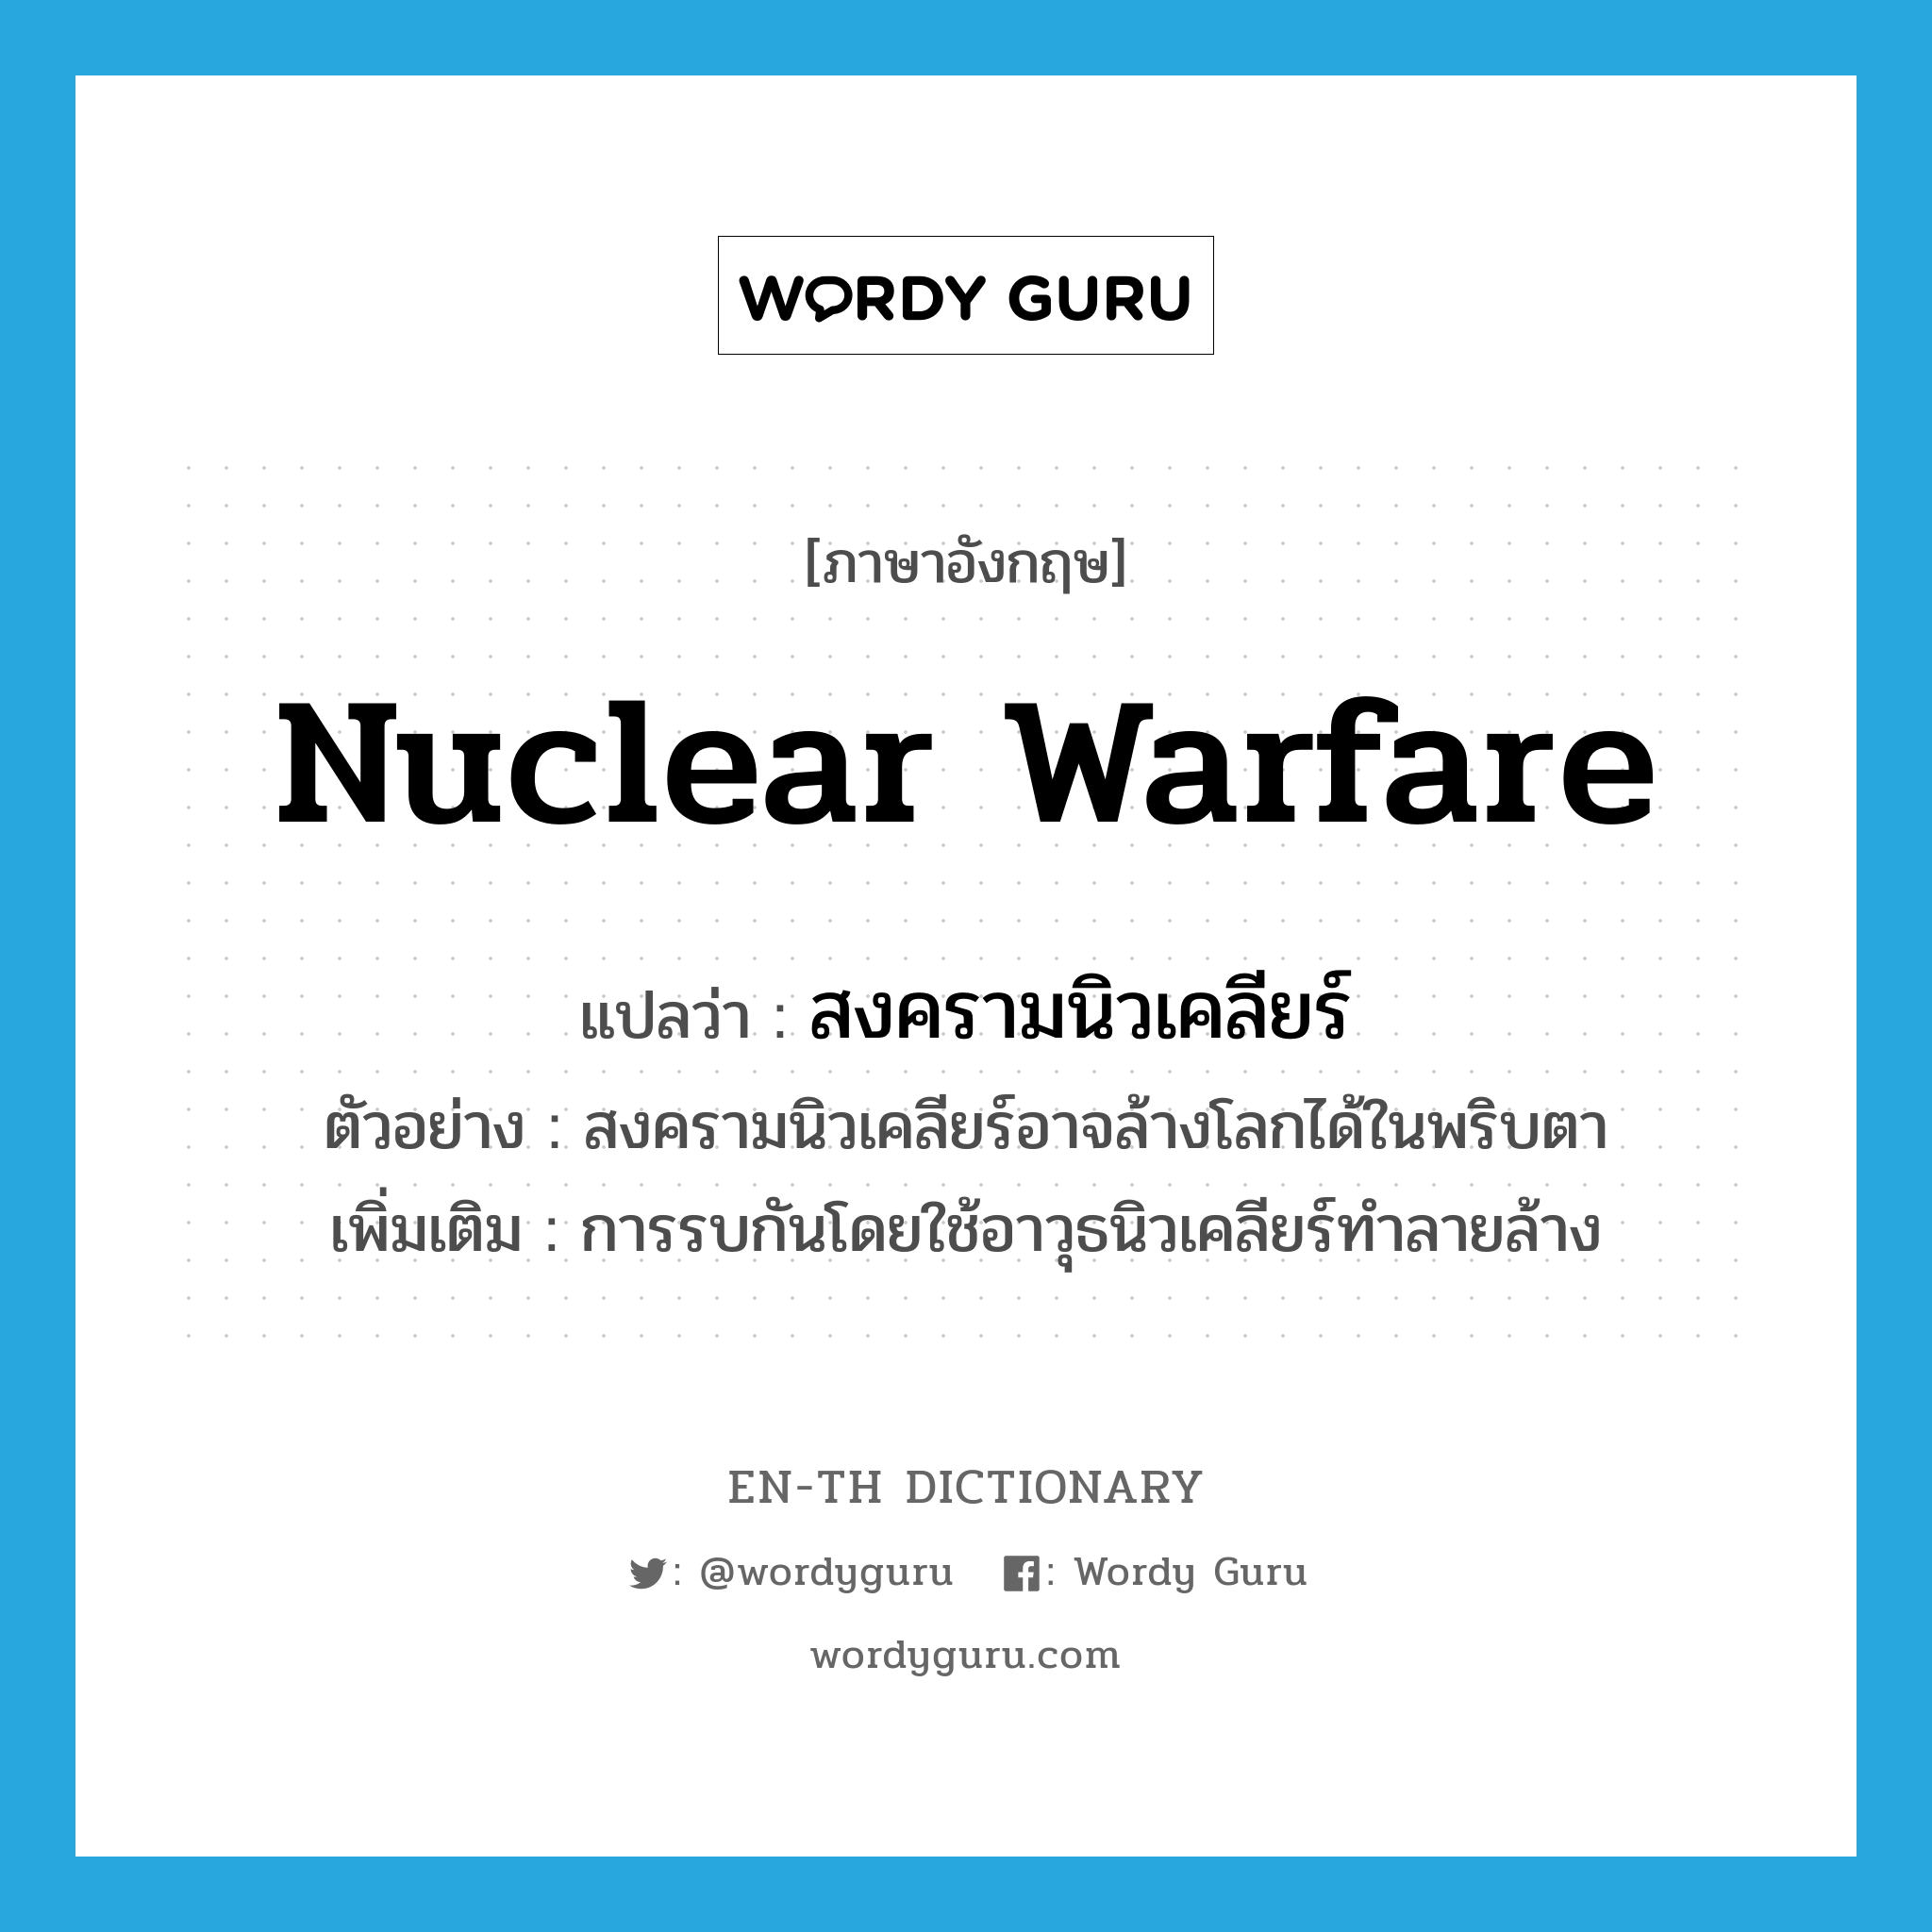 nuclear warfare แปลว่า?, คำศัพท์ภาษาอังกฤษ nuclear warfare แปลว่า สงครามนิวเคลียร์ ประเภท N ตัวอย่าง สงครามนิวเคลียร์อาจล้างโลกได้ในพริบตา เพิ่มเติม การรบกันโดยใช้อาวุธนิวเคลียร์ทำลายล้าง หมวด N